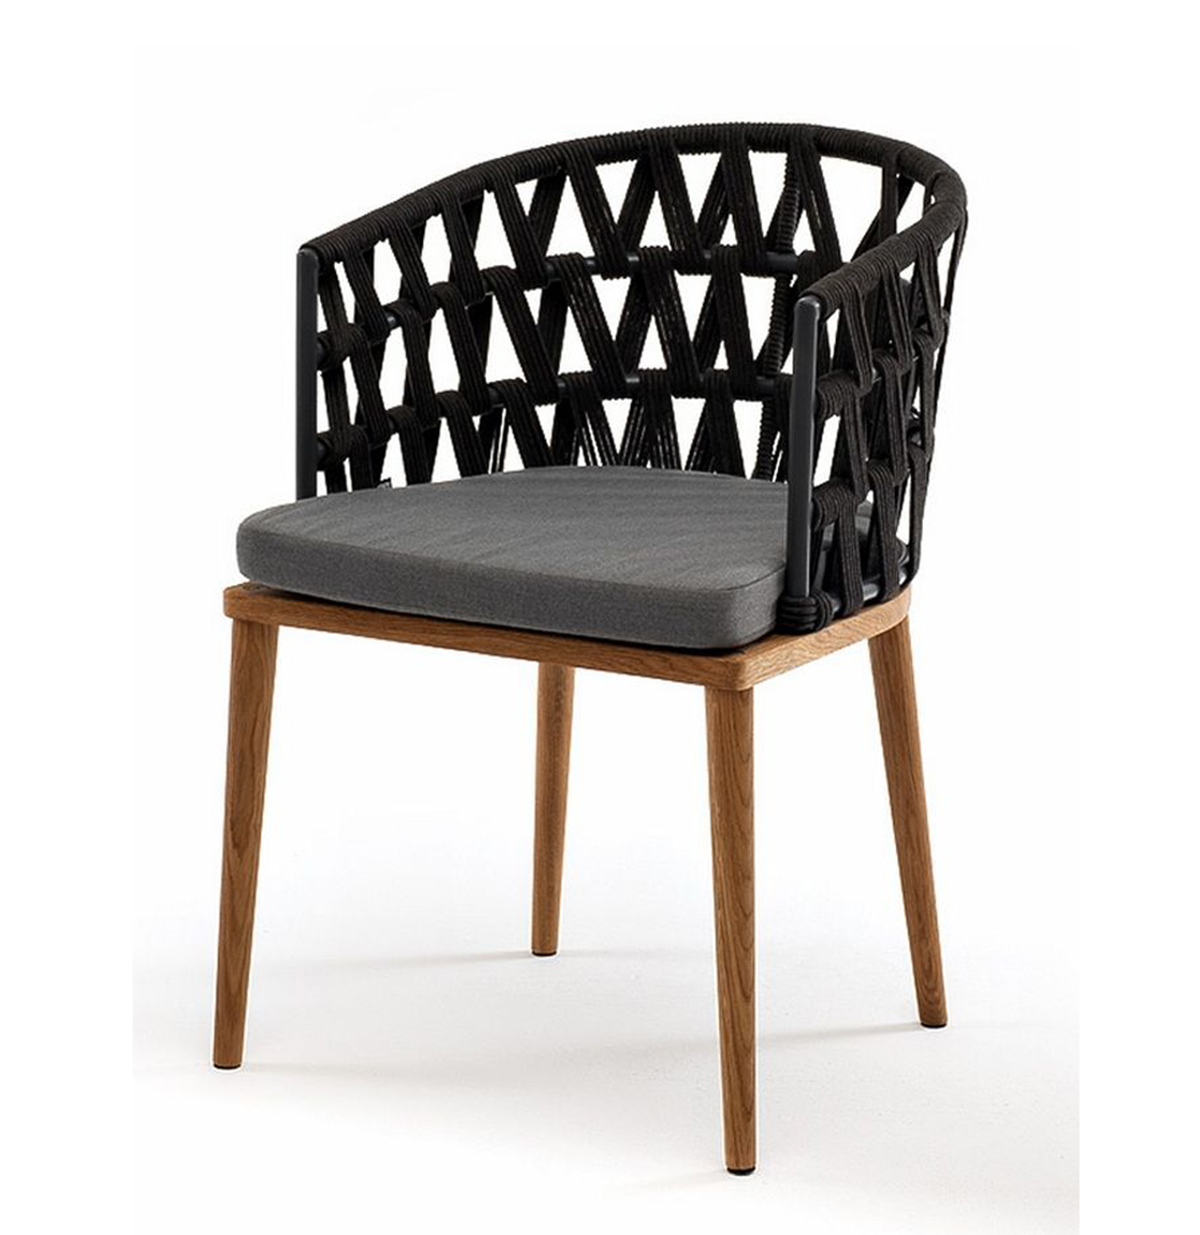 Плетеный стул Диего из дуба, темно-серый стул обеденный металлический b915 – темно серый